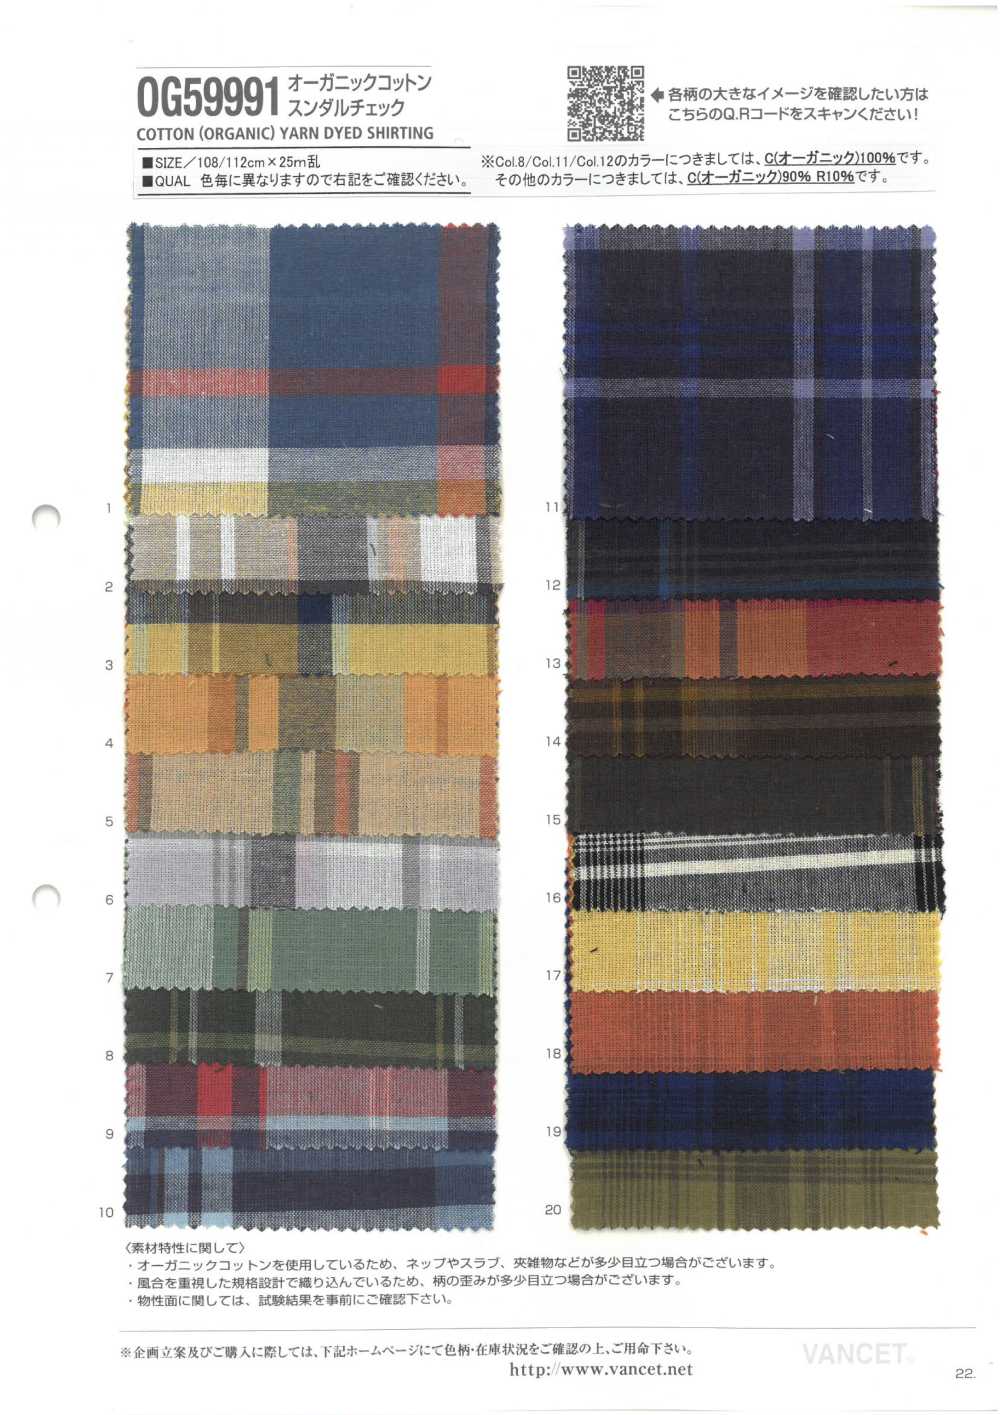 OG59991 Carreaux Sundar En Coton Biologique[Fabrication De Textile] VANCET